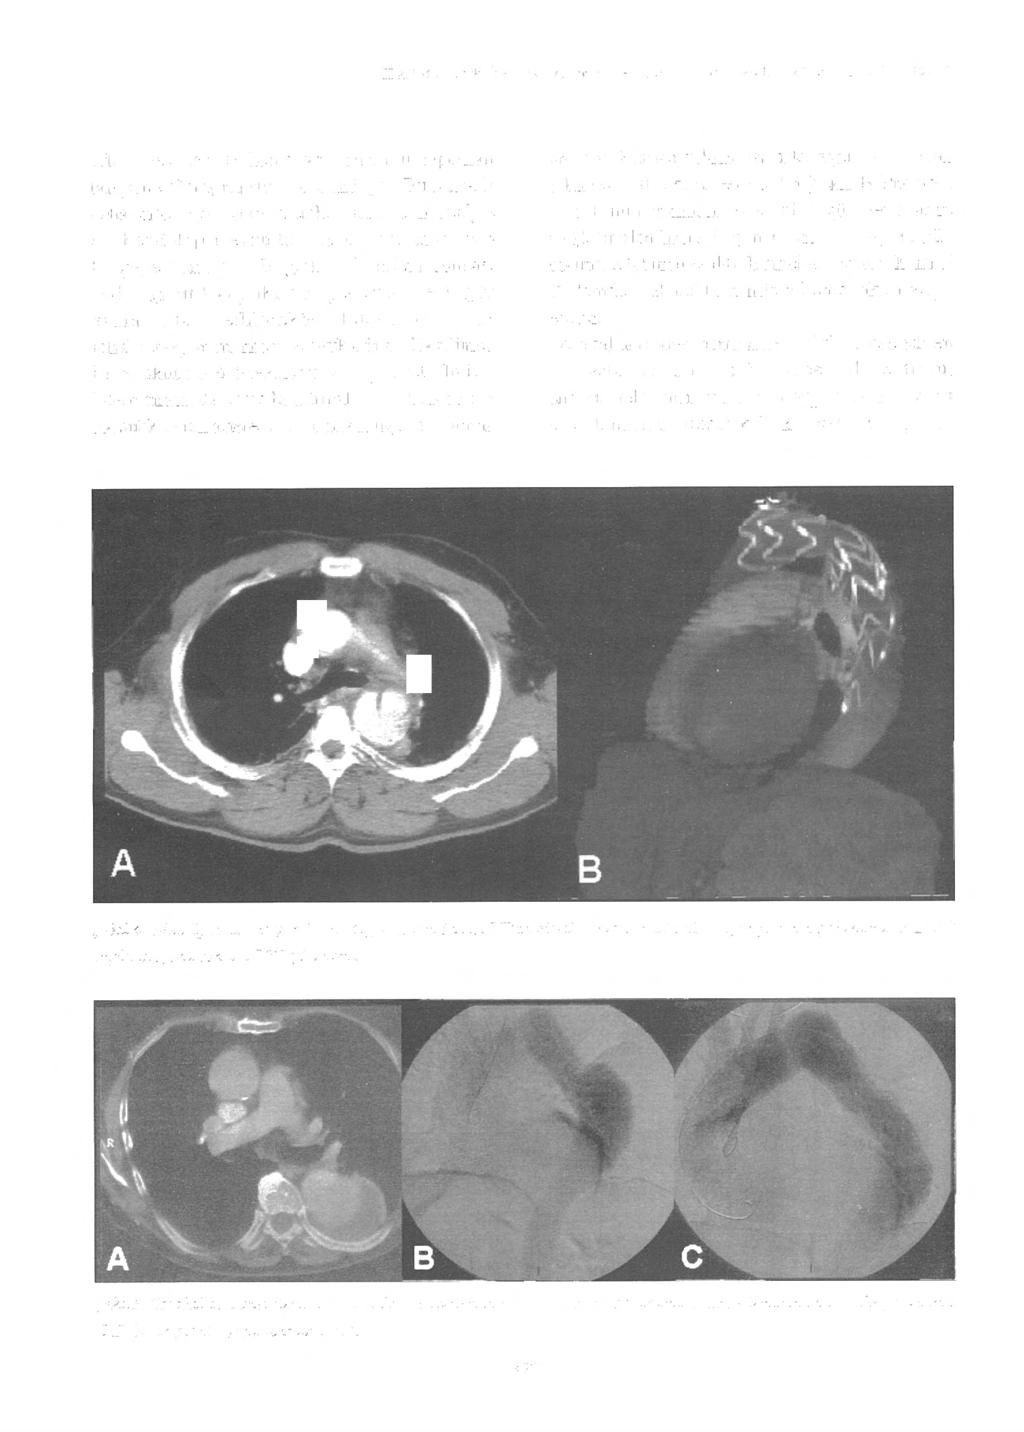 H Arbaılı ve ark: inen aort anevrizma ve d iseksi yonlarında endovasküler stent greft ile tedavi eden, çevresinde hematom oluşumu saptanan tampone olmuş ruptür tablosundaydı.